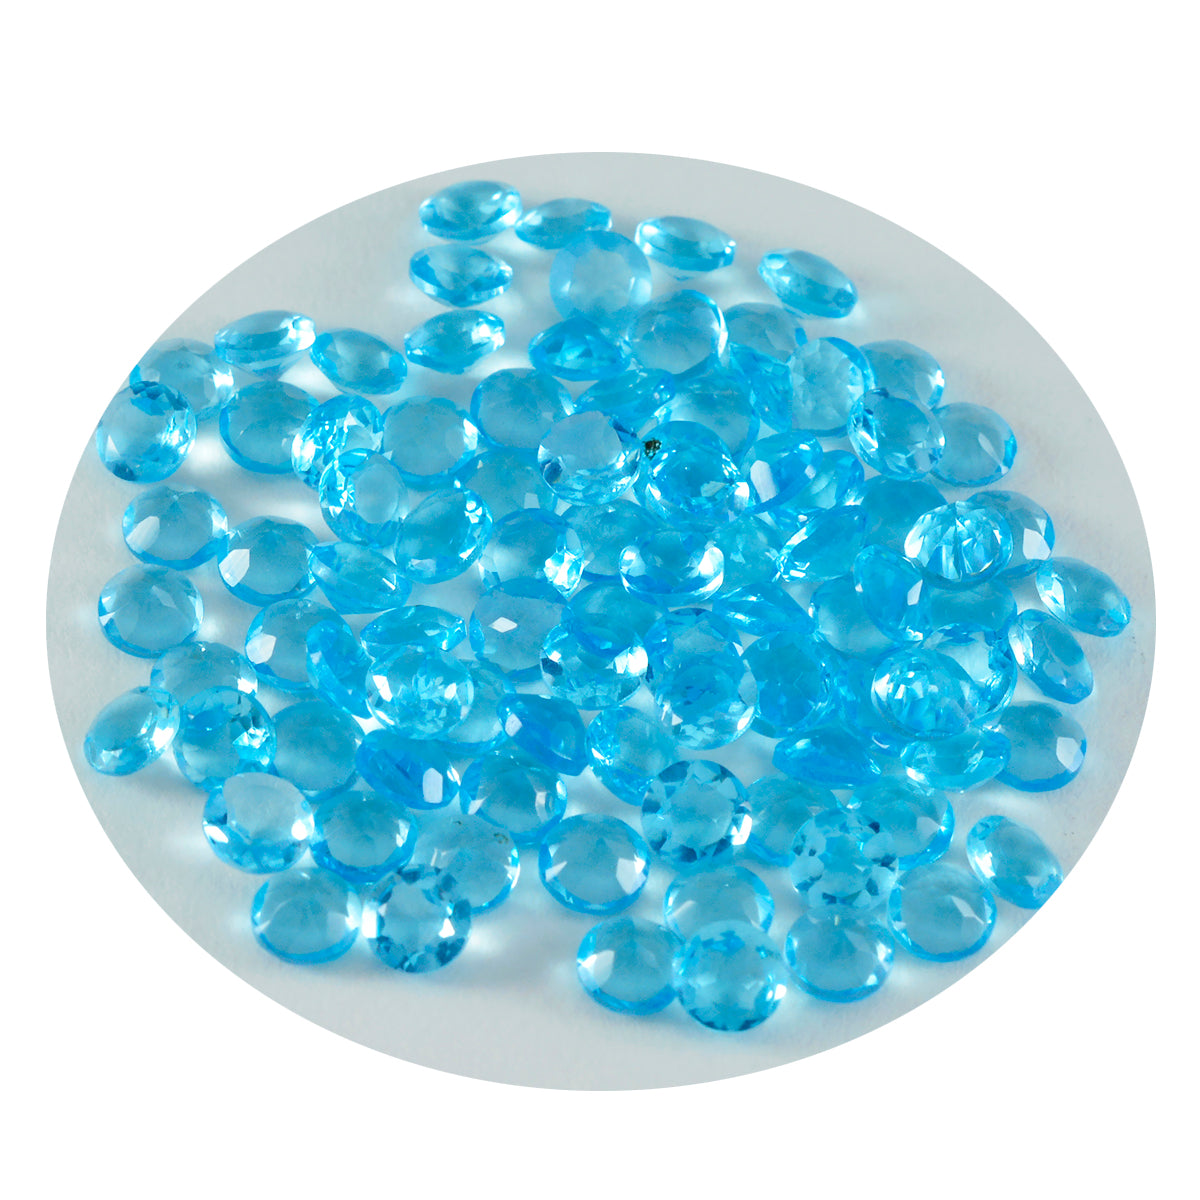 Riyogems 1 Stück blauer Topas, CZ, facettiert, 3 x 3 mm, runde Form, süßer Qualitätsstein